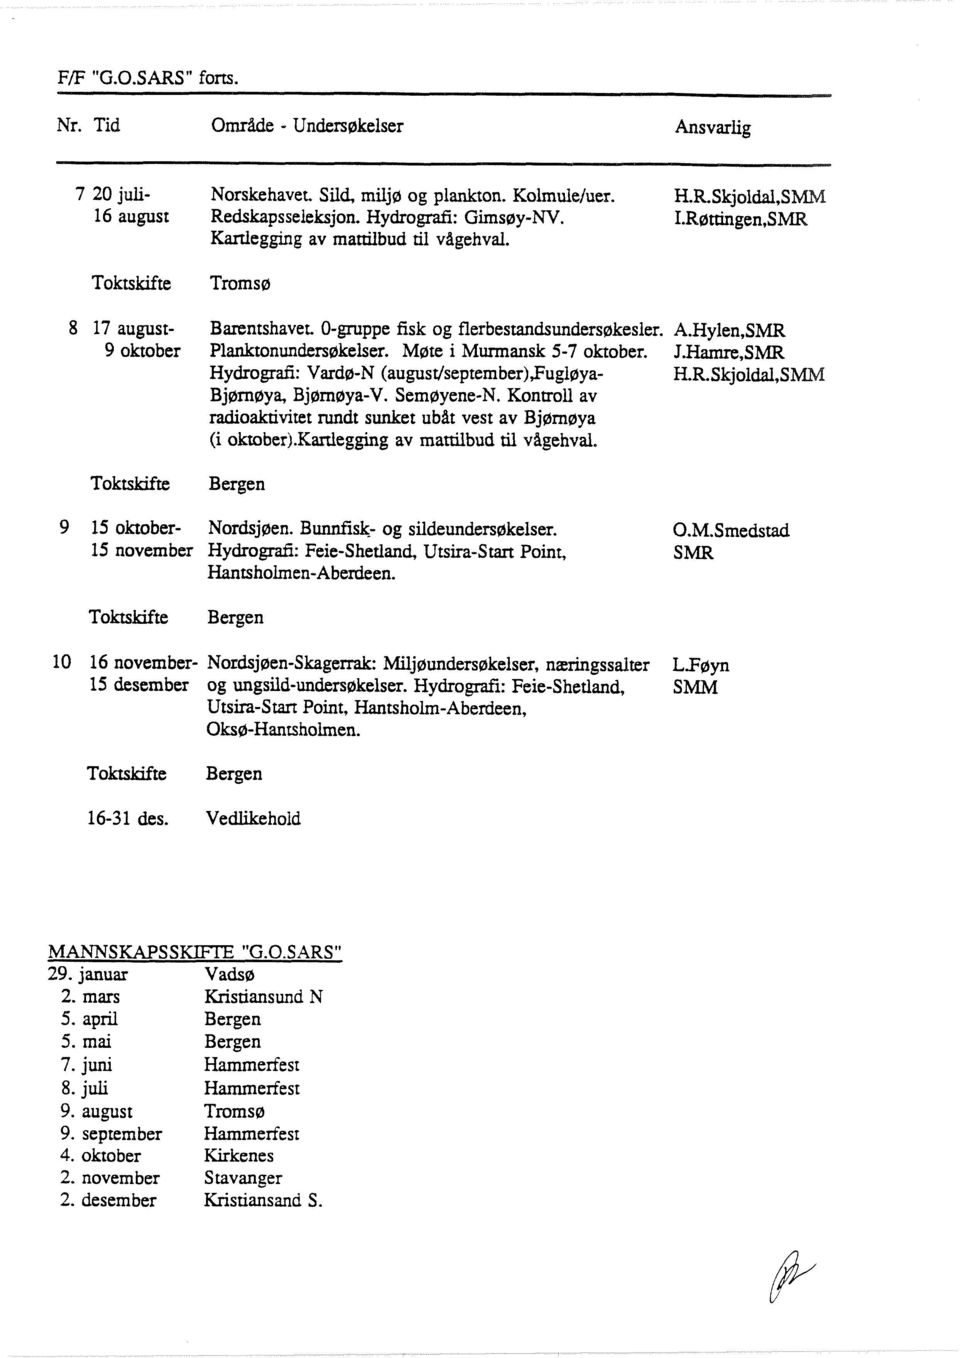 Hamre, Hydrografl: Vardø-N (august/september),fugl~ya- H.R.Skjoidal,S Bjørnøya, Bjørnøya-V. Semøyene-N. Kontroll av radioaktivitet rundt sunket ubåt vest av Bjørnøya (i oktoberj.